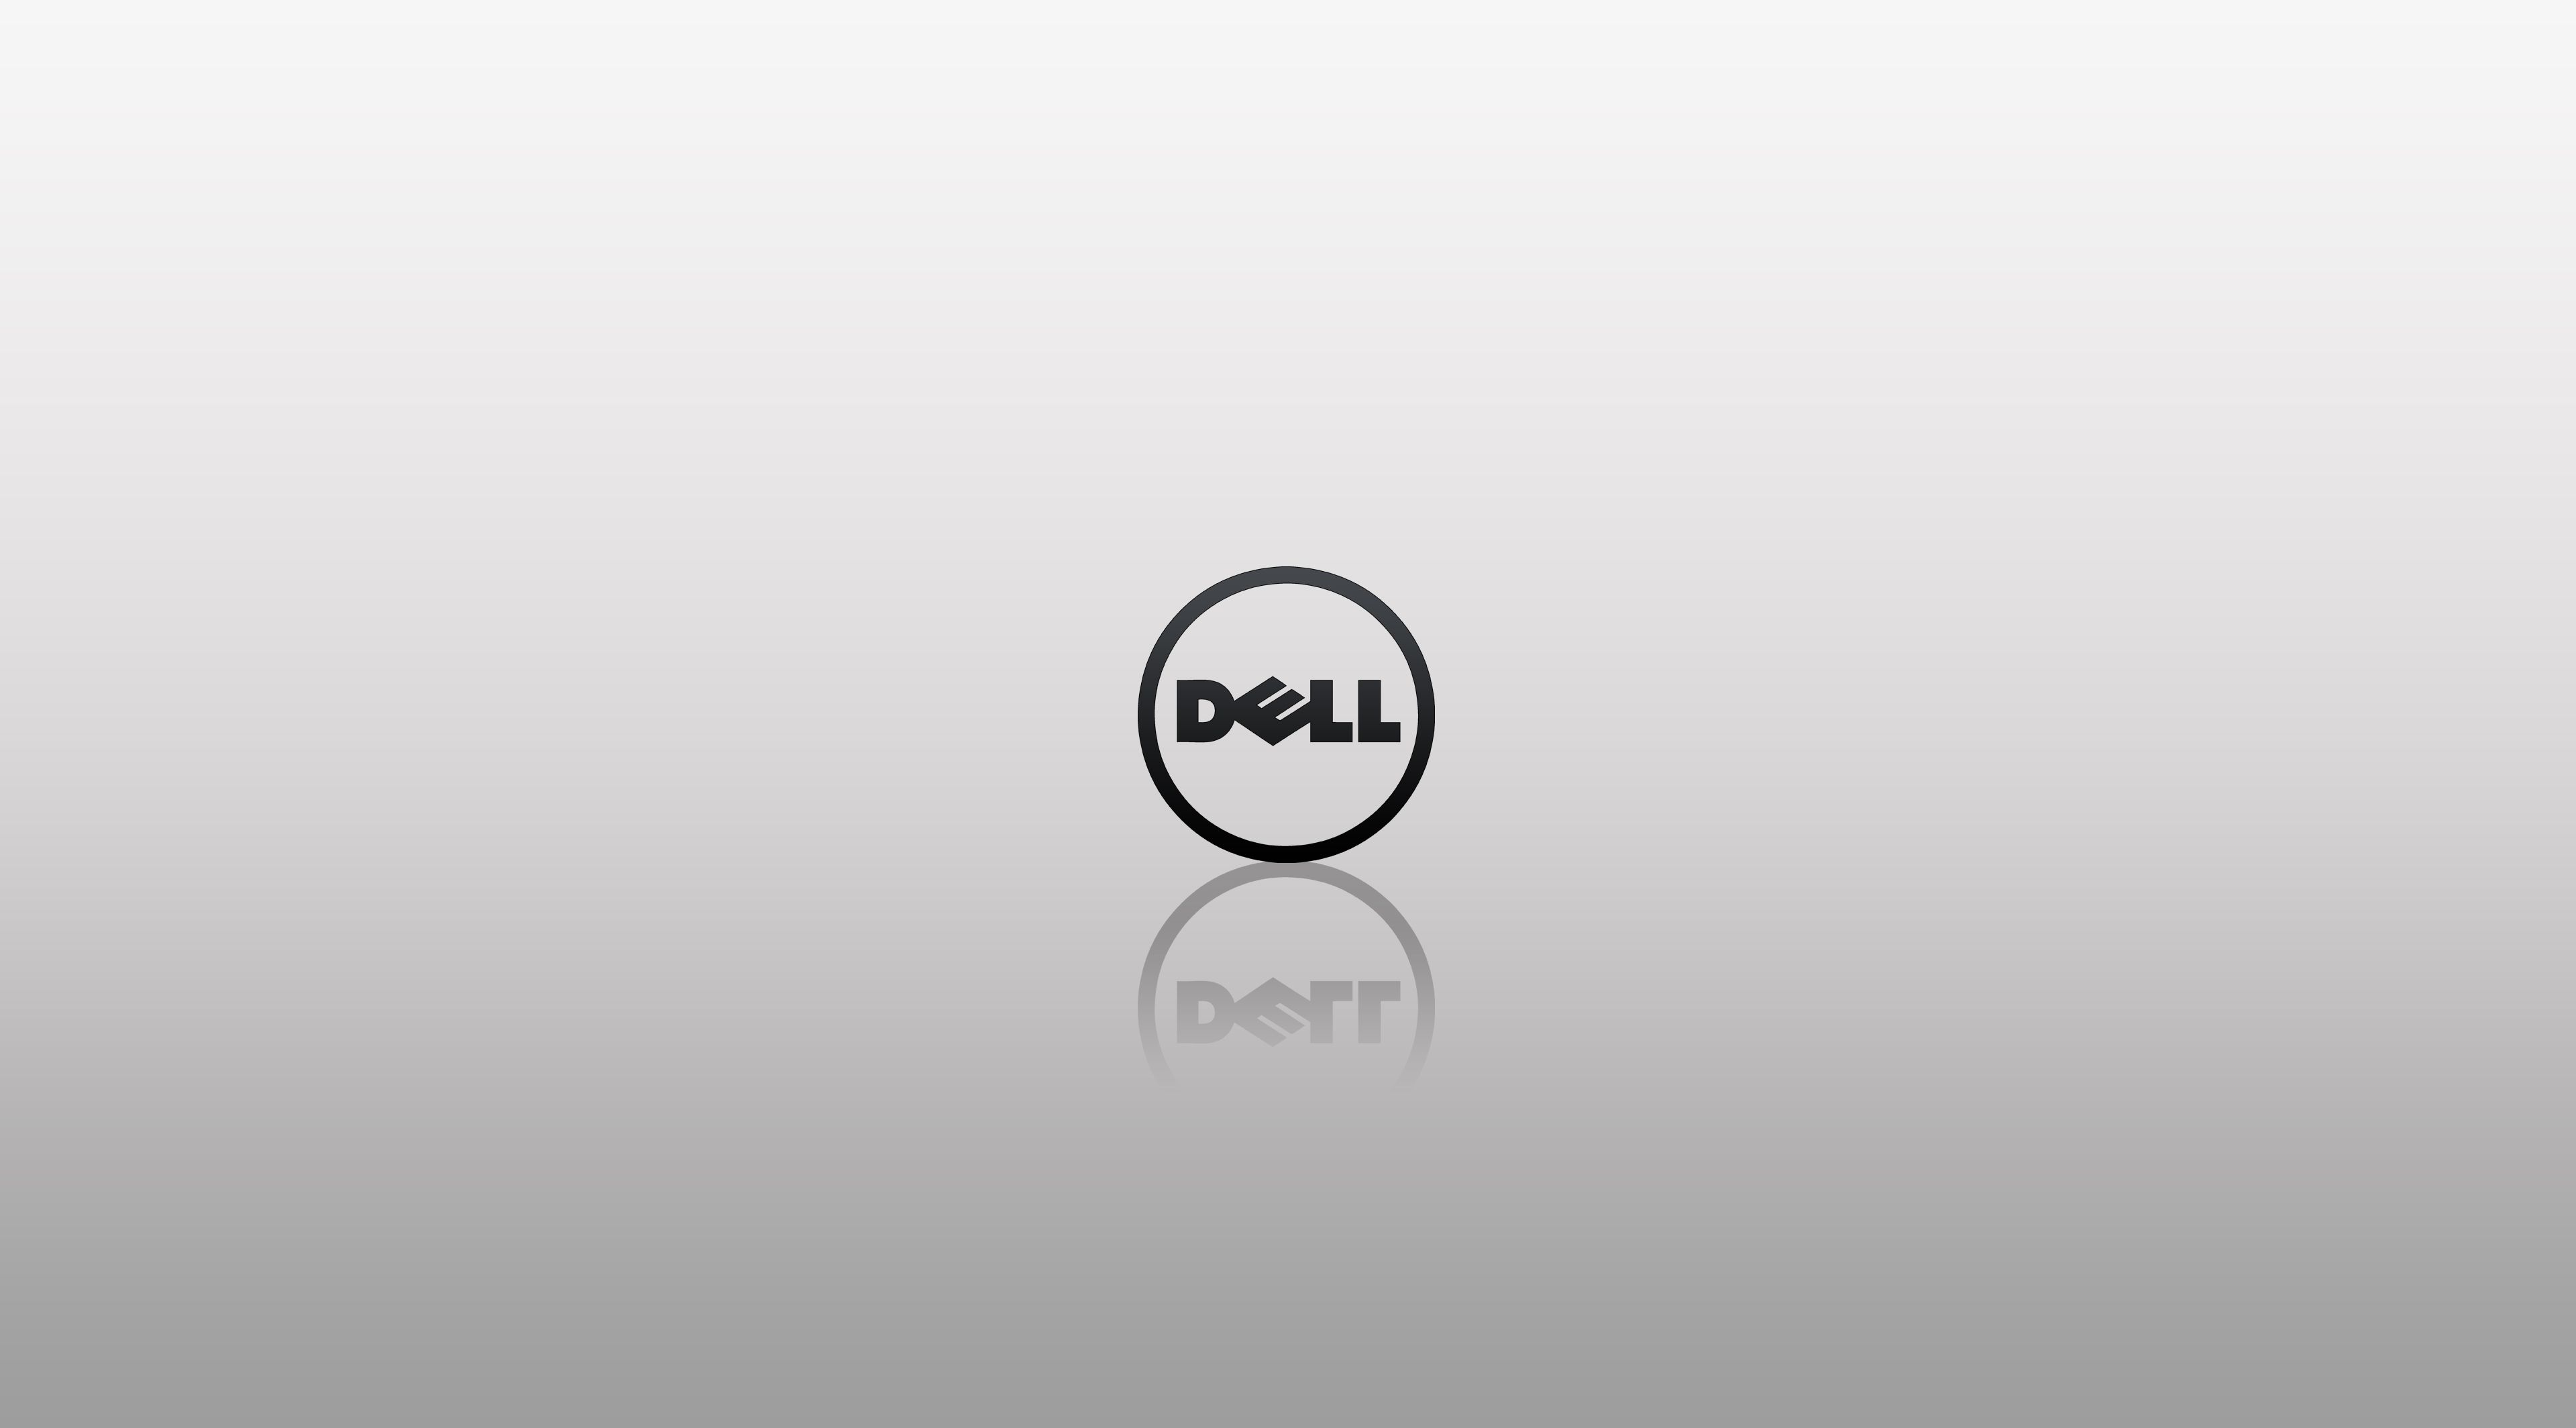  Dell Hintergrundbild 3840x2128. Dell 4k Wallpaper